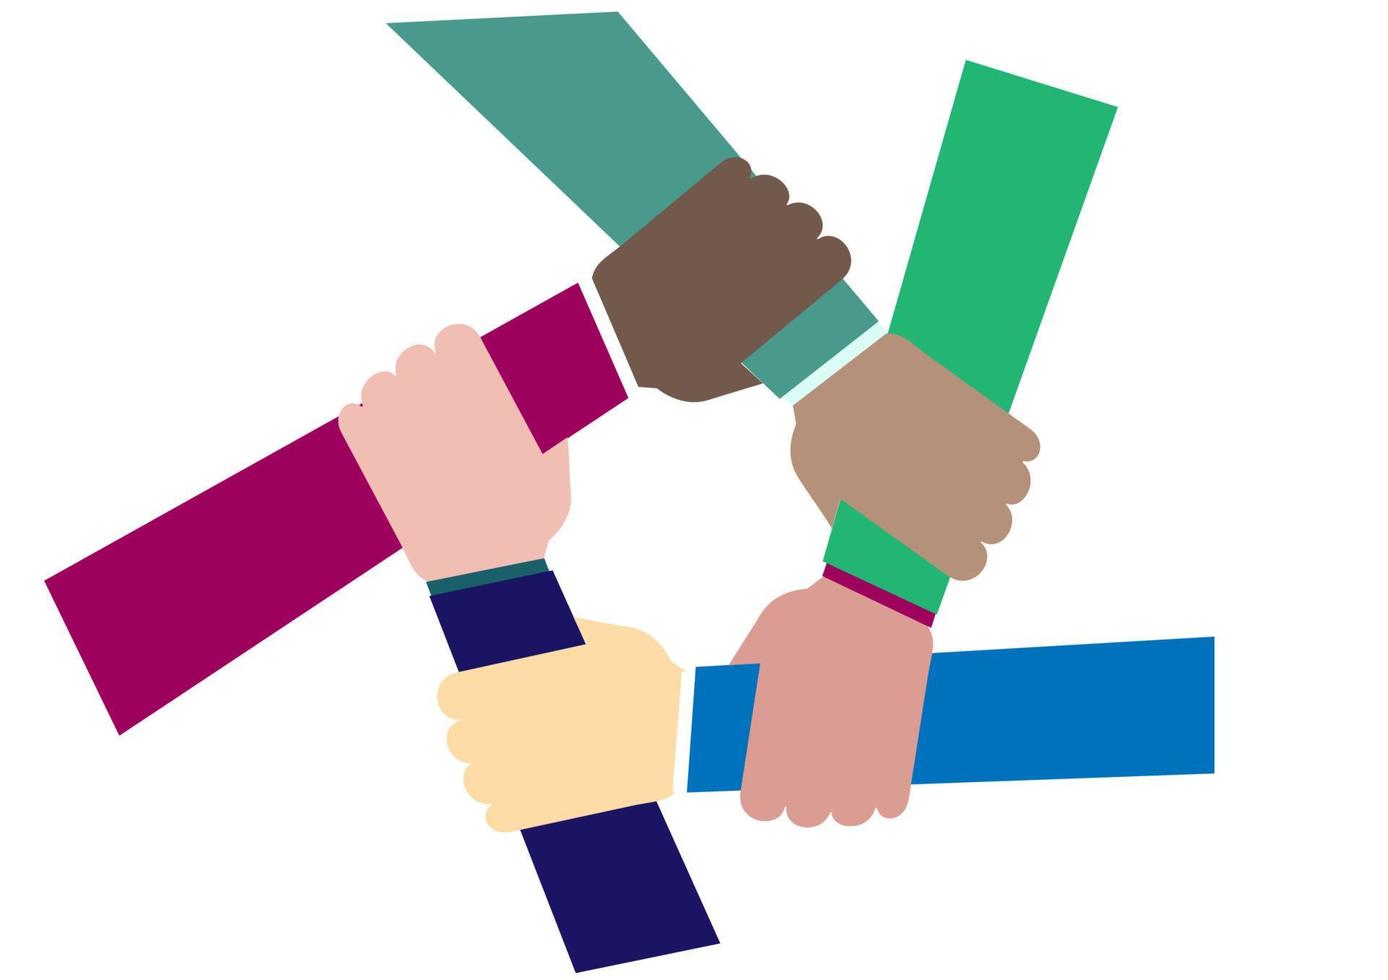 unidade, de mãos dadas, forma um círculo de diversidade étnica. vetor diferente grupo de pessoas de mãos dadas apoio e parceria, cooperação, amizade no ativismo social.